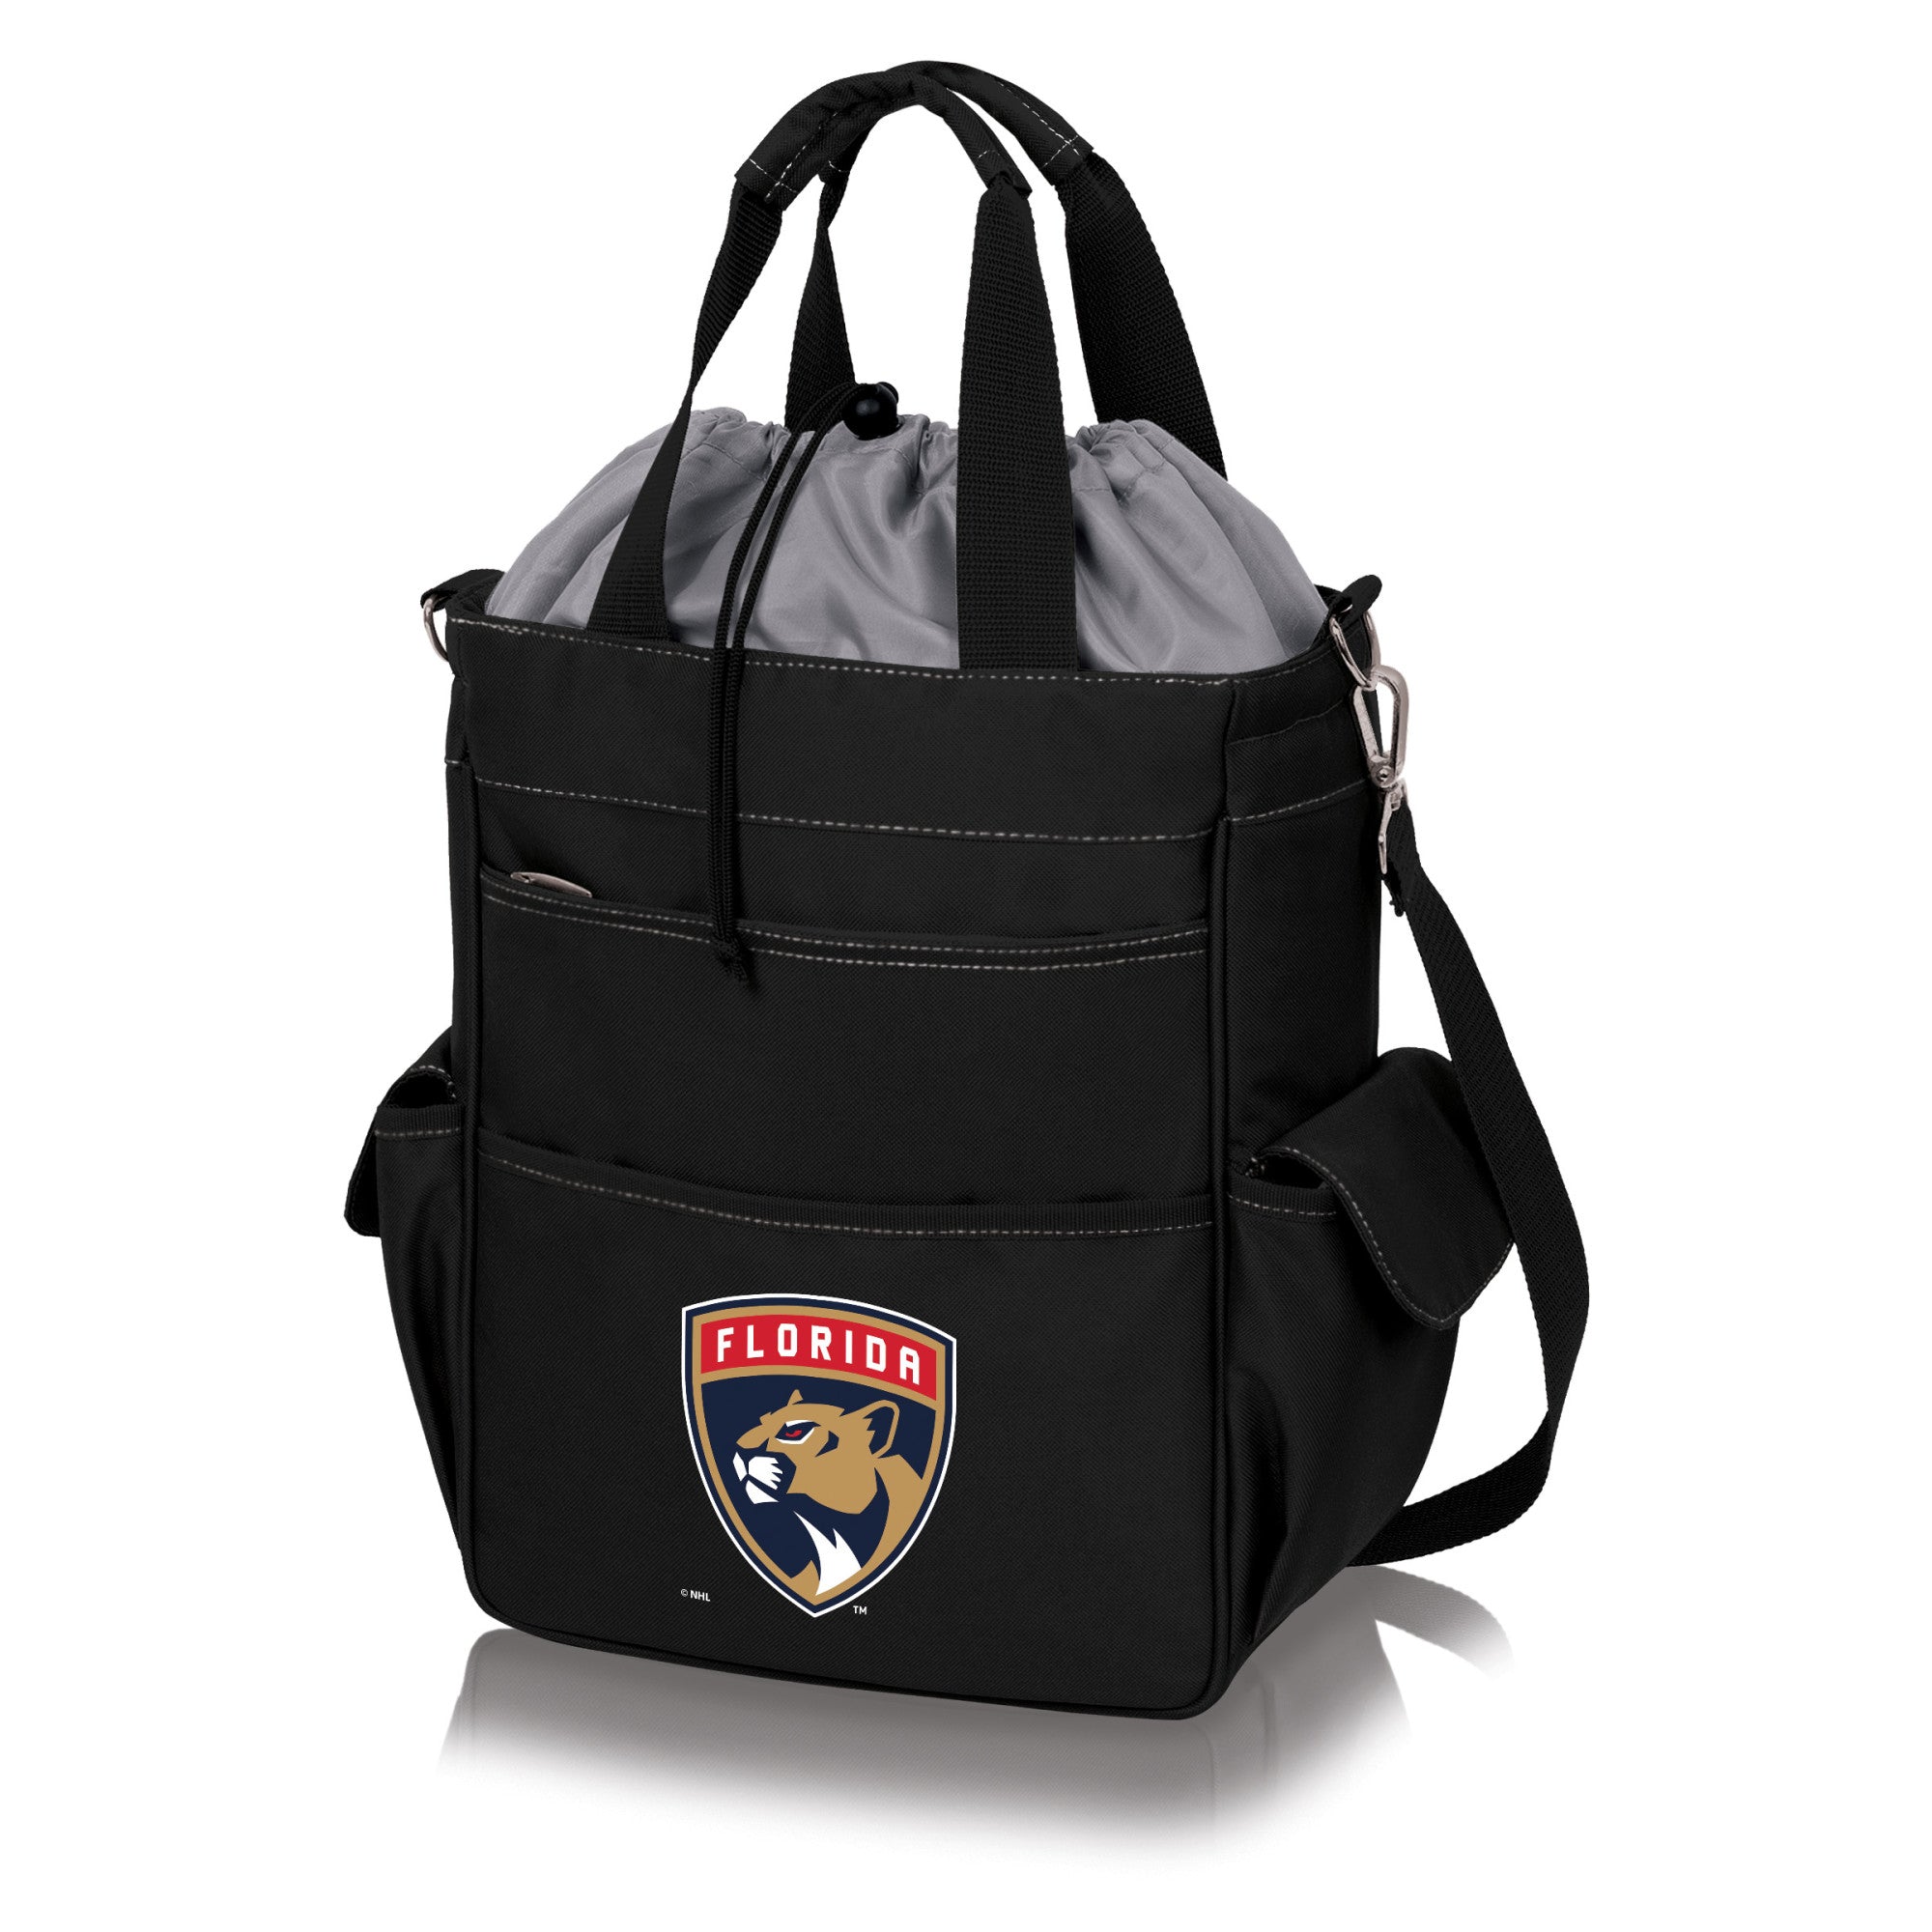 Florida Panthers - Activo Cooler Tote Bag